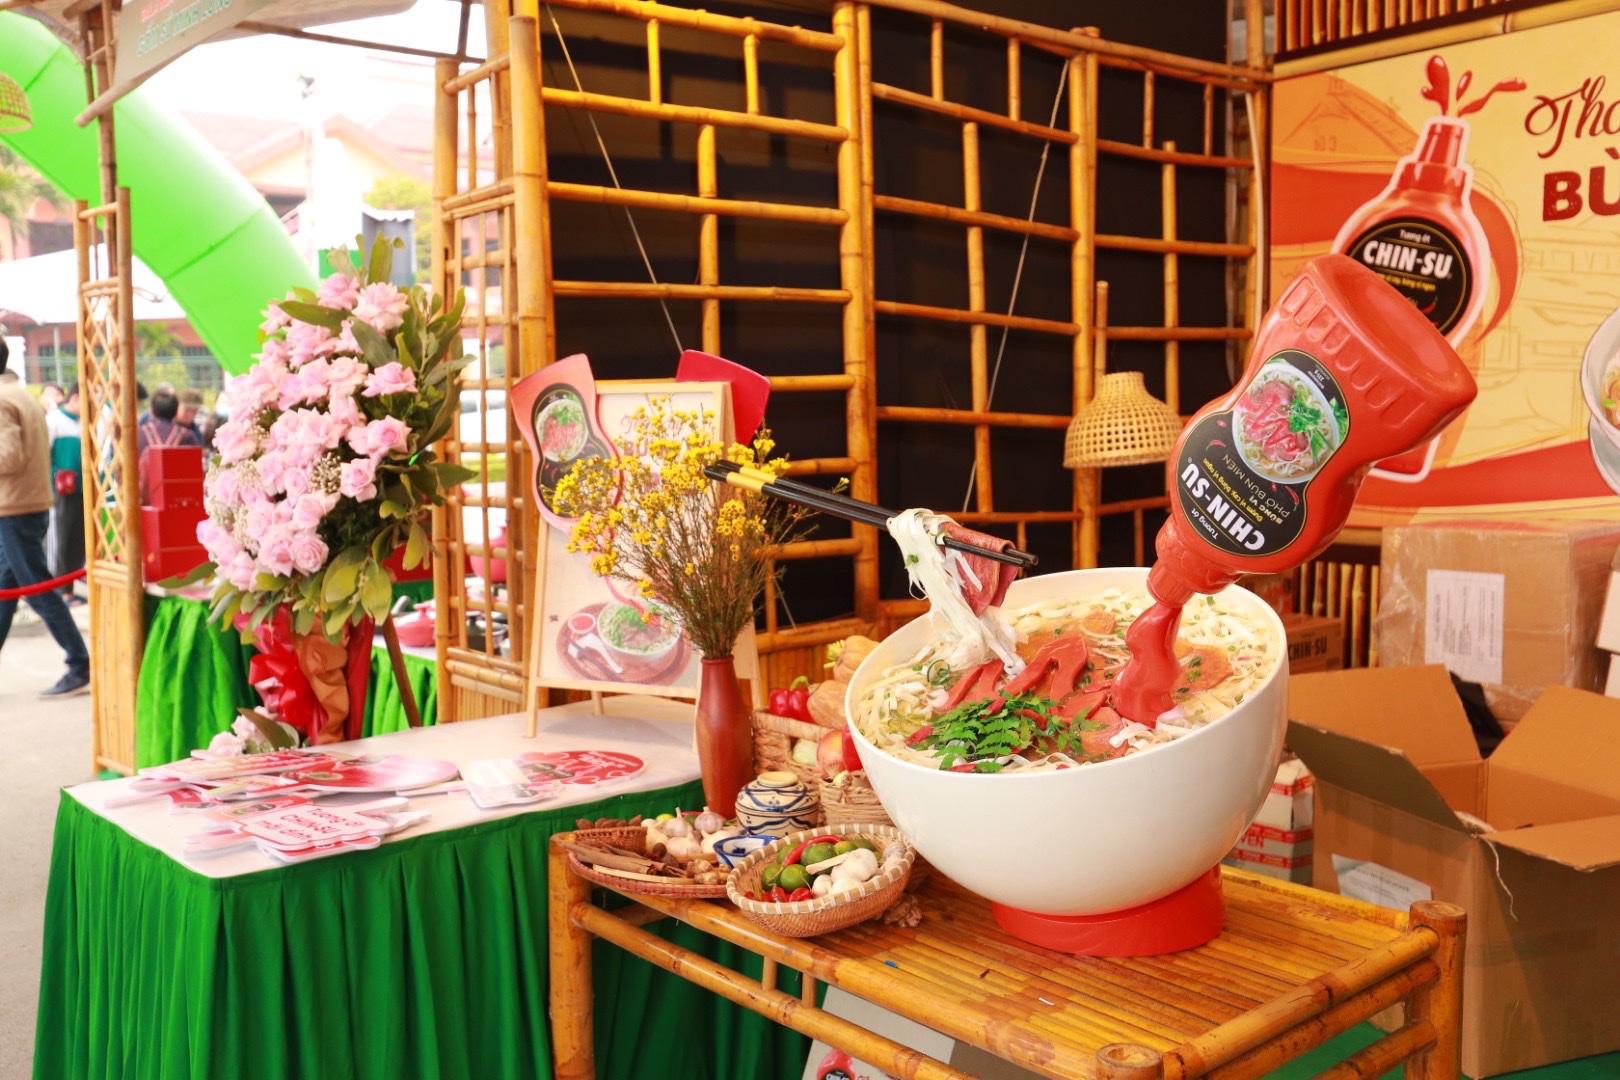 Hàng ngàn khách tham quan chứng kiến đầu bếp nổi tiếng chế biến phở cùng tương ớt Chin-su - Ảnh 6.